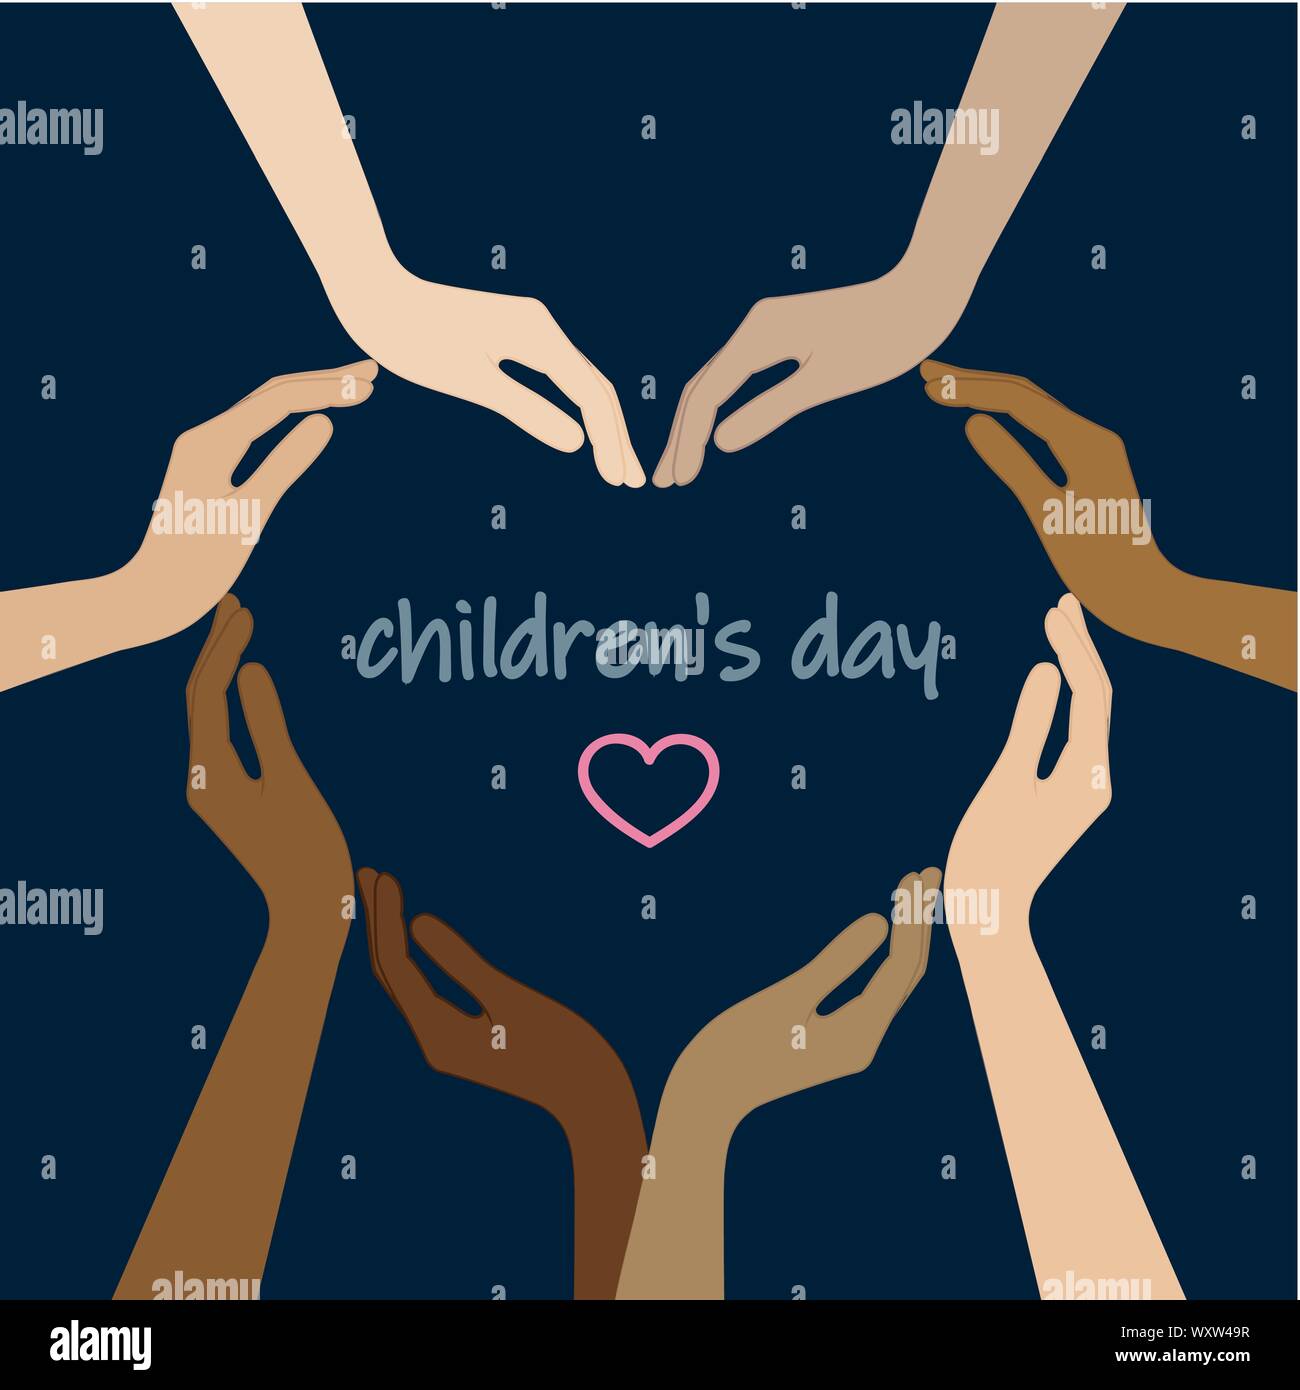 Manos humanas con diferentes colores de piel forma un corazón para el día de los niños ilustración vectorial EPS10 Ilustración del Vector